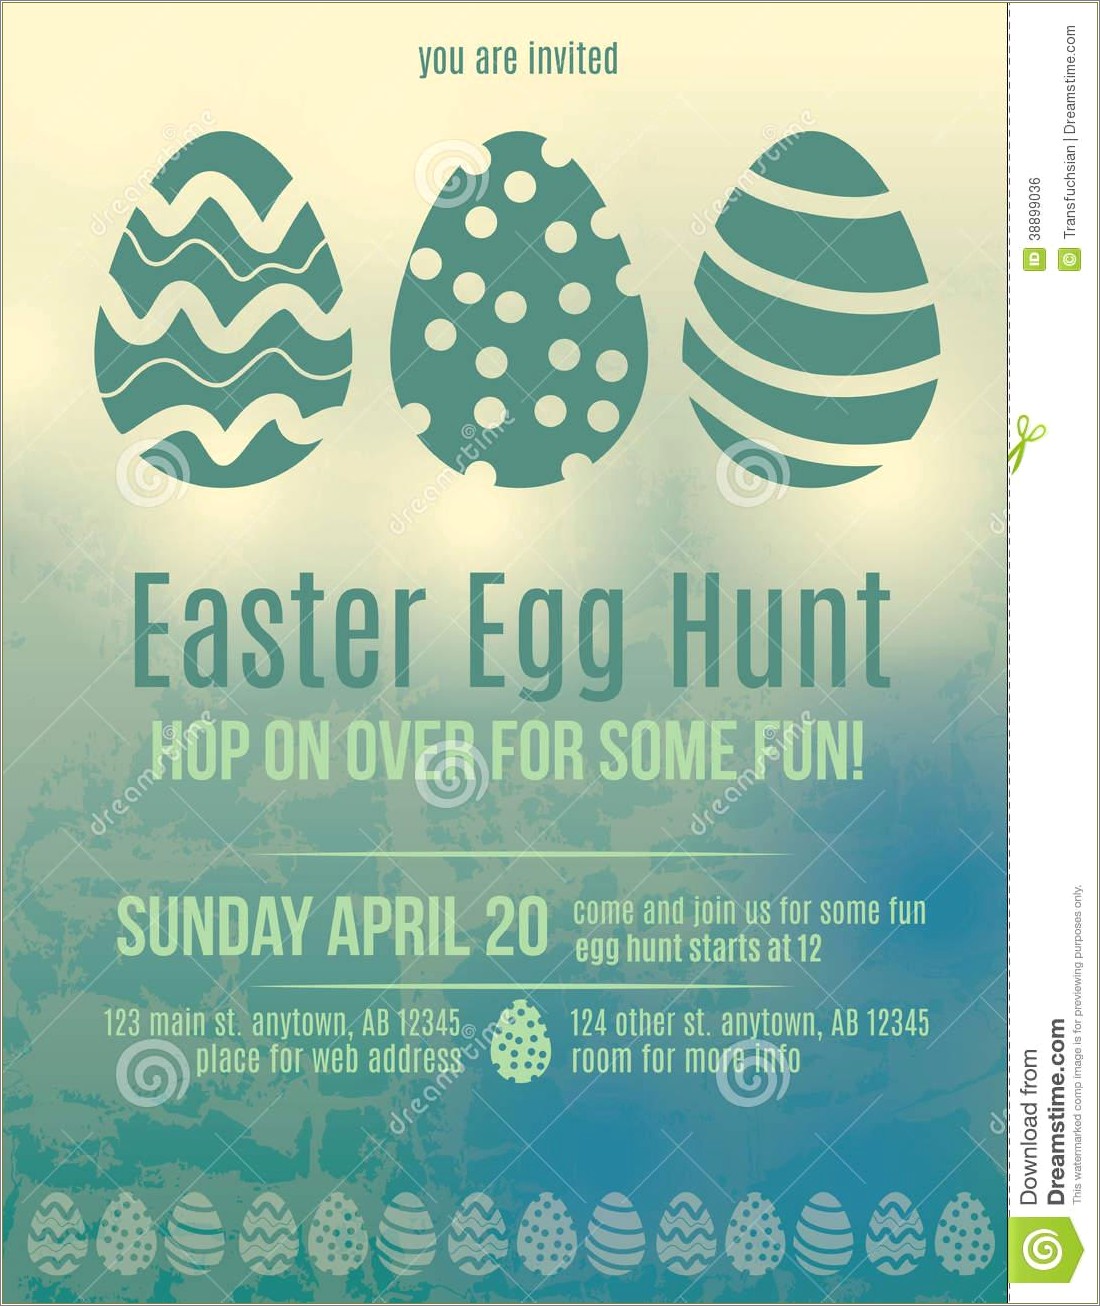 Free Easter Egg Hunt Flyer Template Publisher